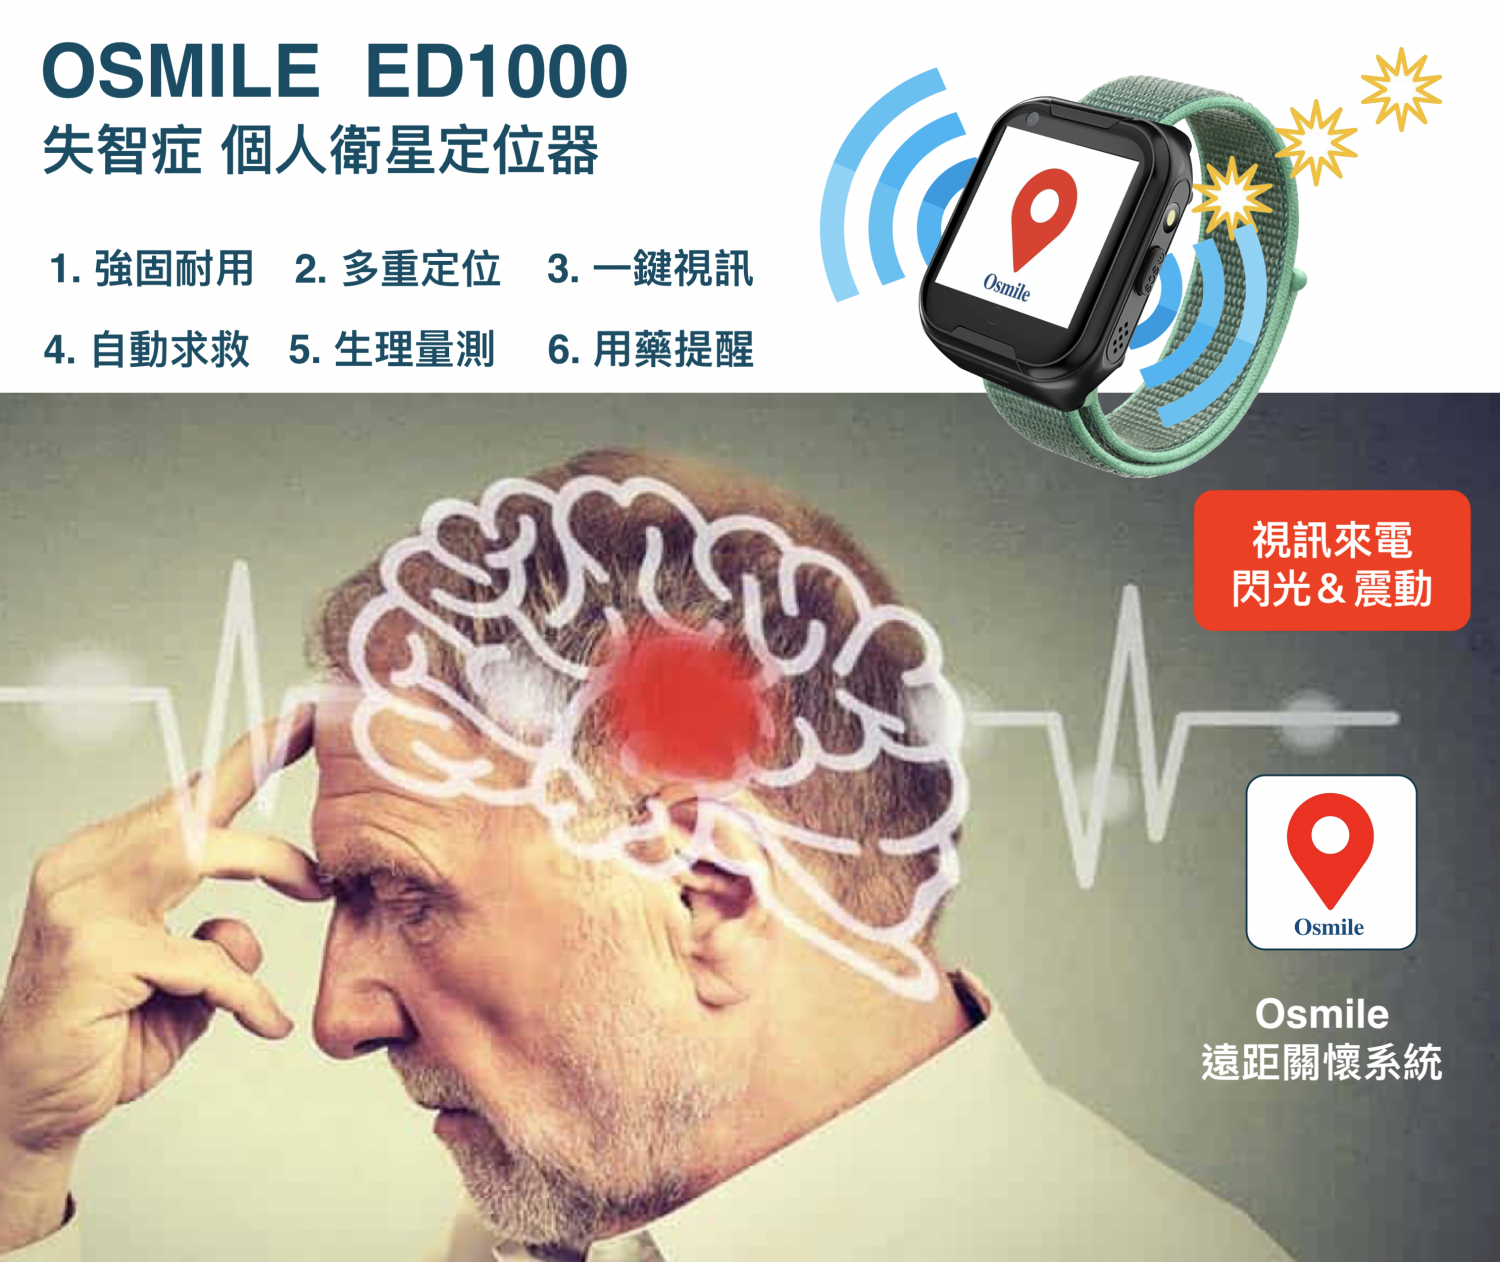 Osmile ED1000 (L) 聽力受損獨居老人跌倒偵測一鍵緊急求救與失智老人AGPS個人衛星定位手錶 (來電震動閃光版_輔具定位手錶__原廠兩年保固)